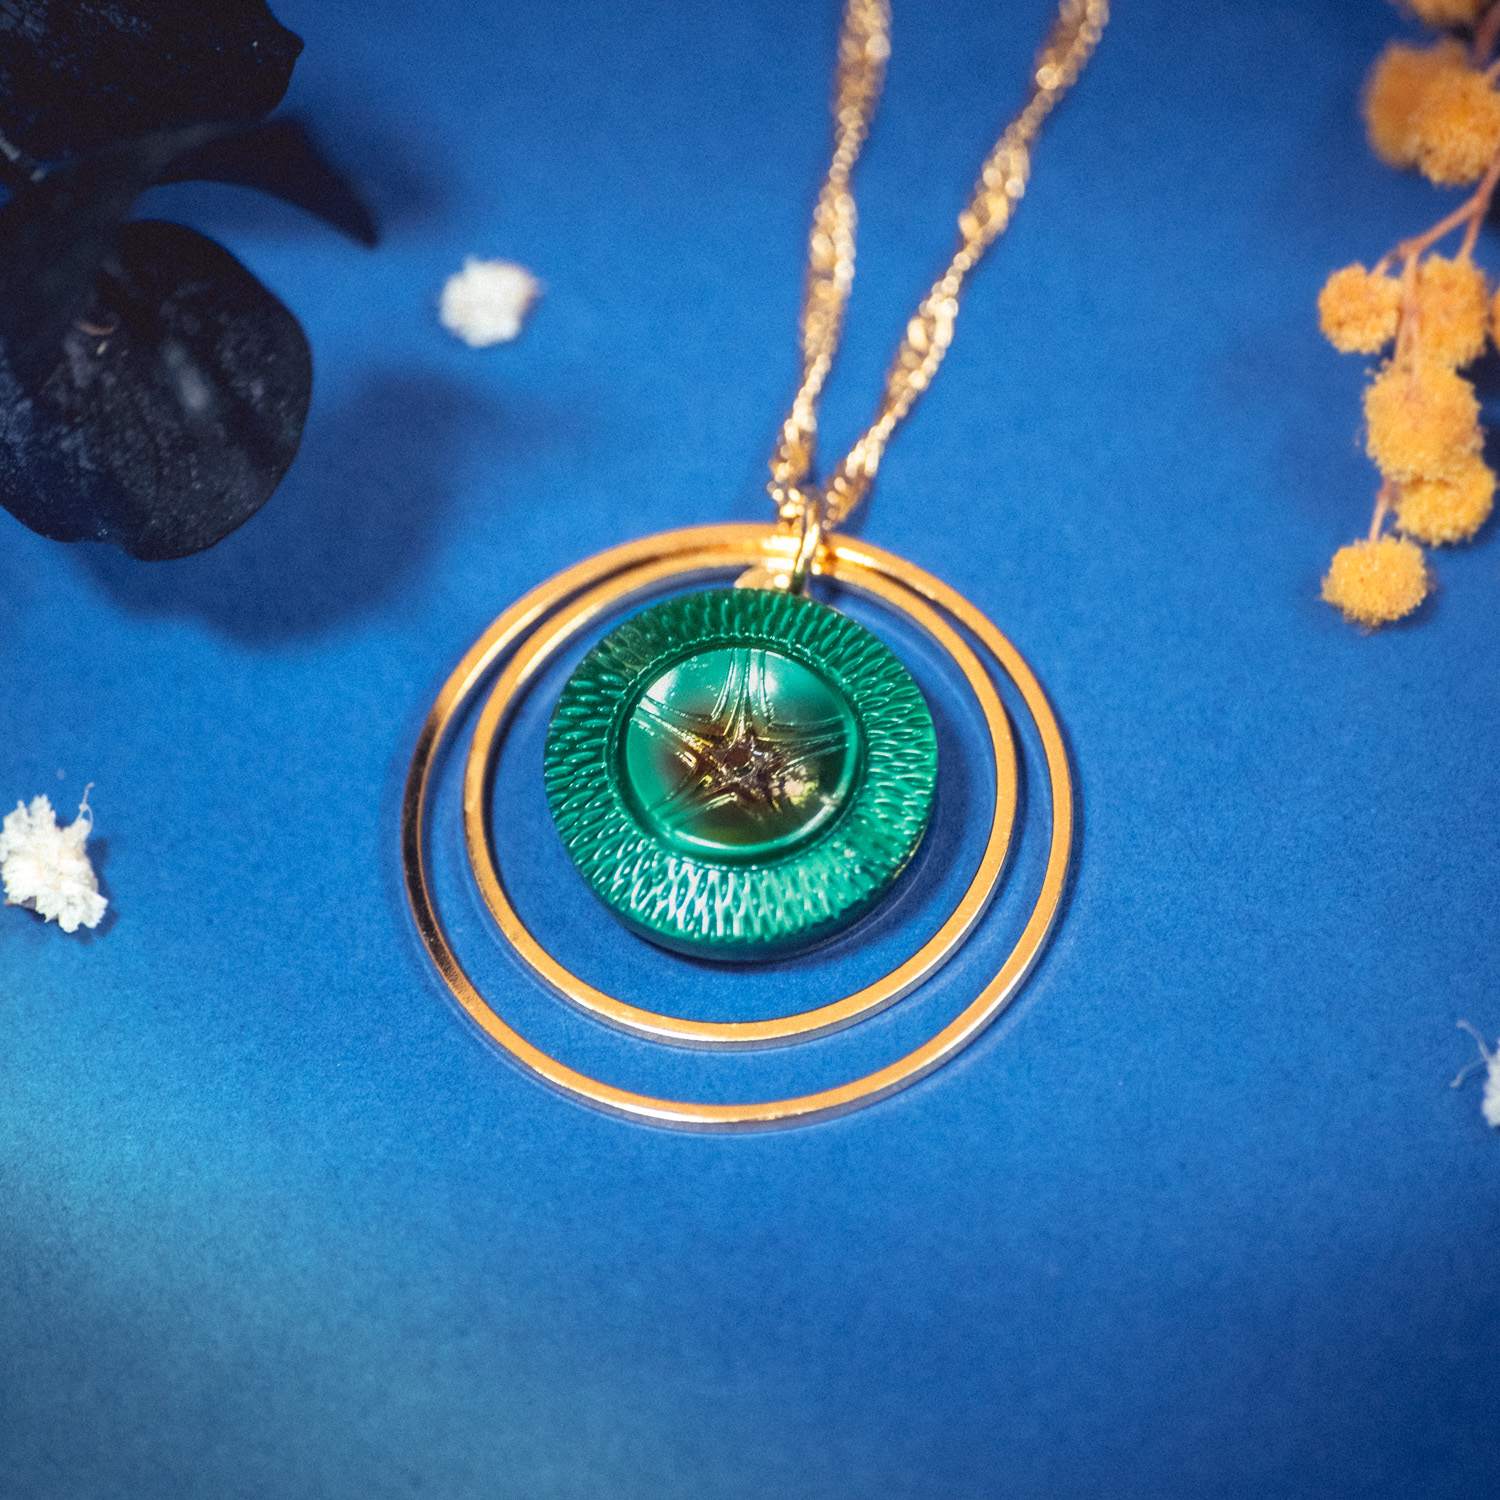 Assuna – Collier Lunare Arielle – bouton ancien 1940 – collier d’inspiration vintage en forme de croissant de lune